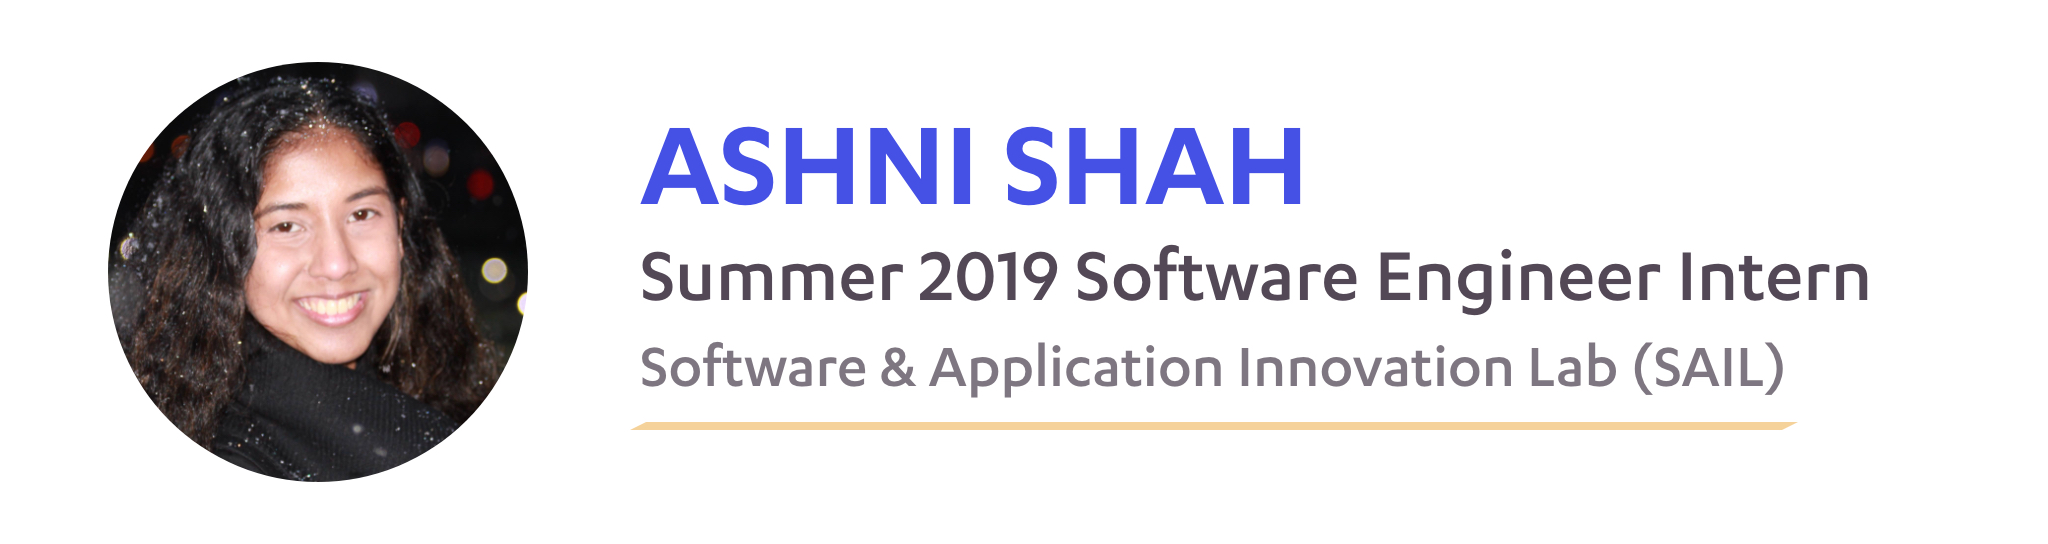 Ashni Shah, SAIL Summer 2019 Software Engineer